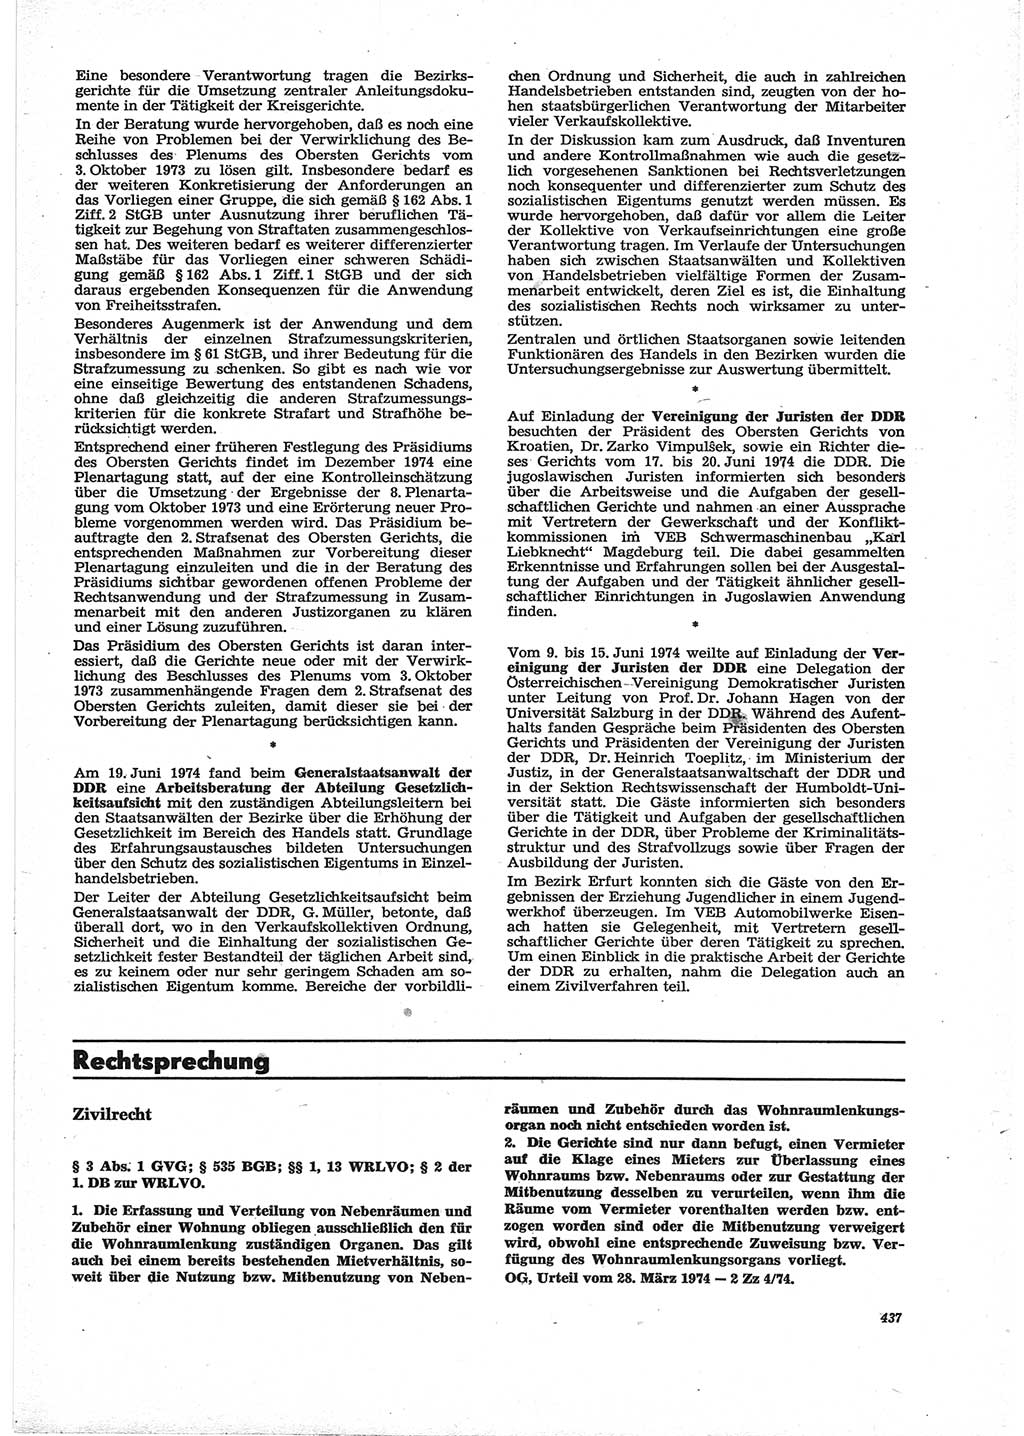 Neue Justiz (NJ), Zeitschrift für Recht und Rechtswissenschaft [Deutsche Demokratische Republik (DDR)], 28. Jahrgang 1974, Seite 437 (NJ DDR 1974, S. 437)